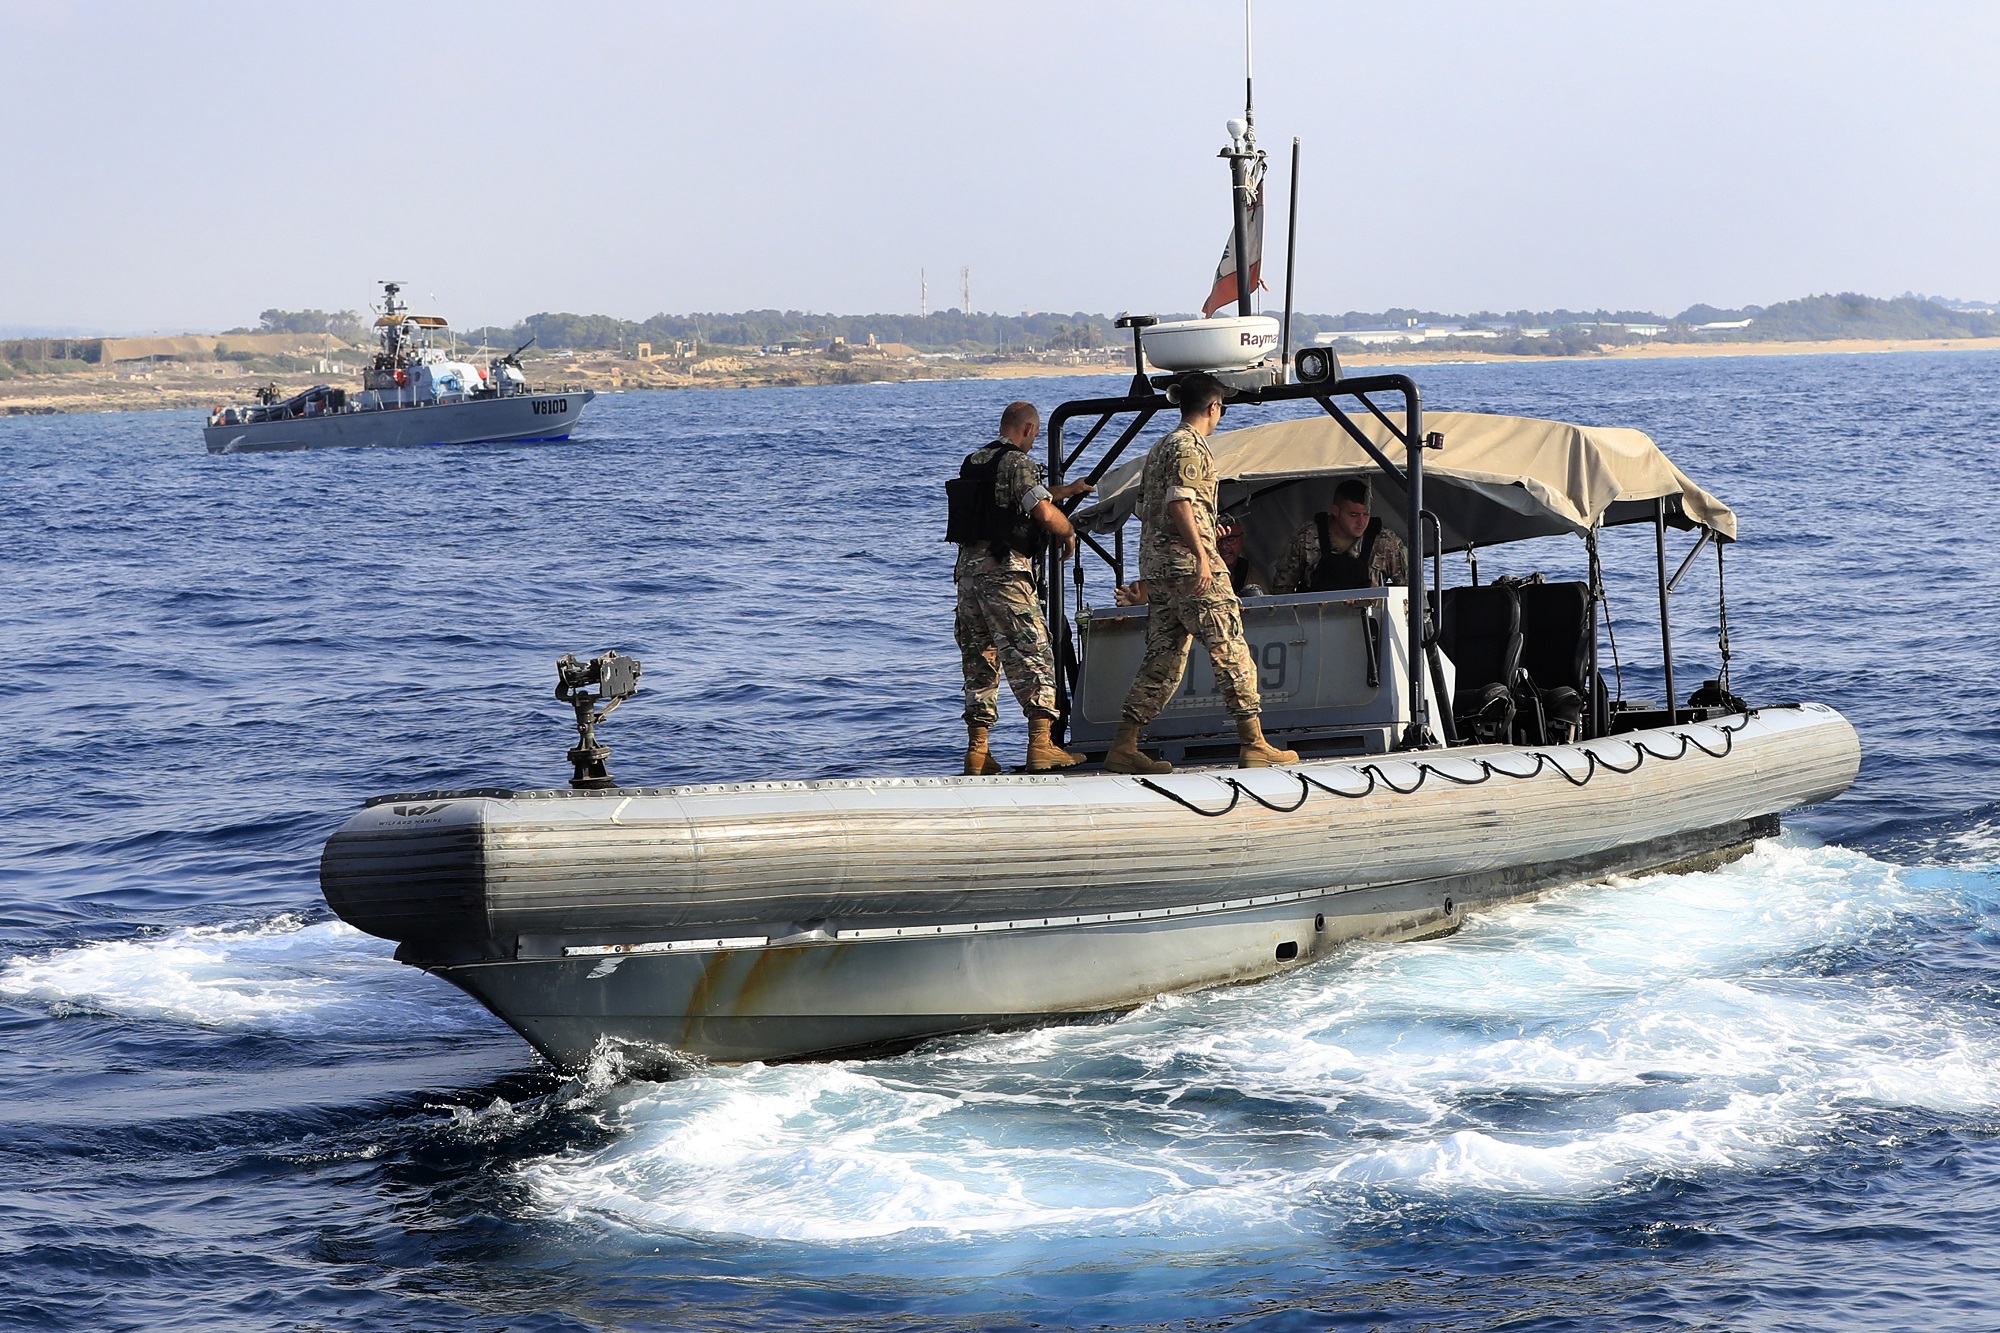 Λίβανος και Ισραήλ βρίσκονται σε κρίσιμο στάδιο για την οριοθέτηση των θαλασσίων συνόρων εκτιμά Αμερικανός αξιωματούχος